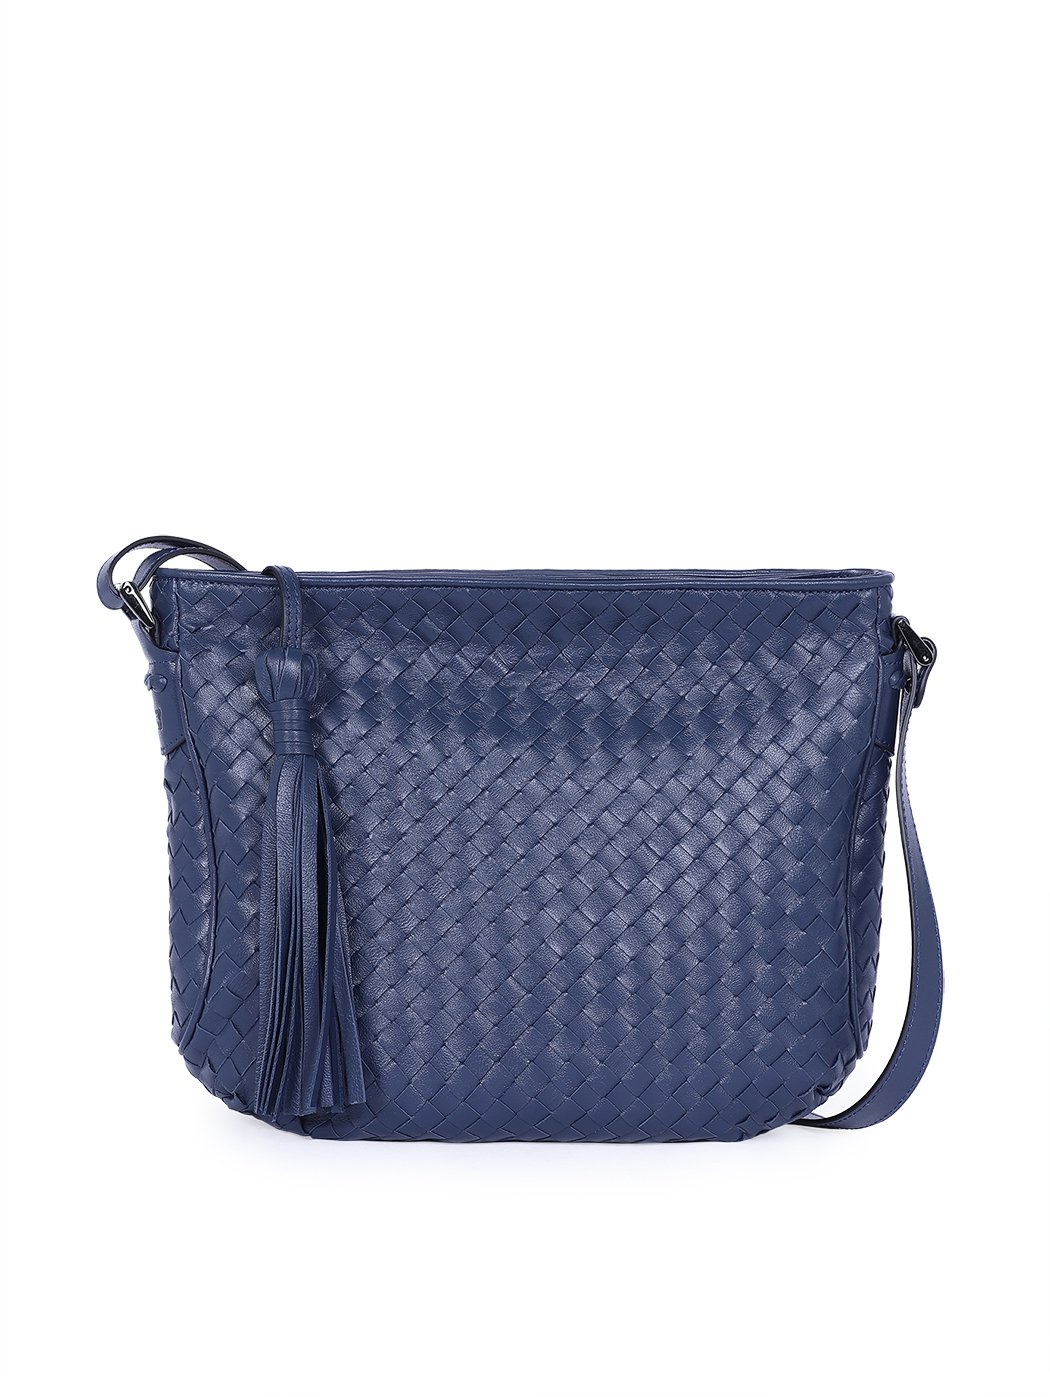 Женская плетеная сумка кросс – боди коллекции Intrecci синего цвета